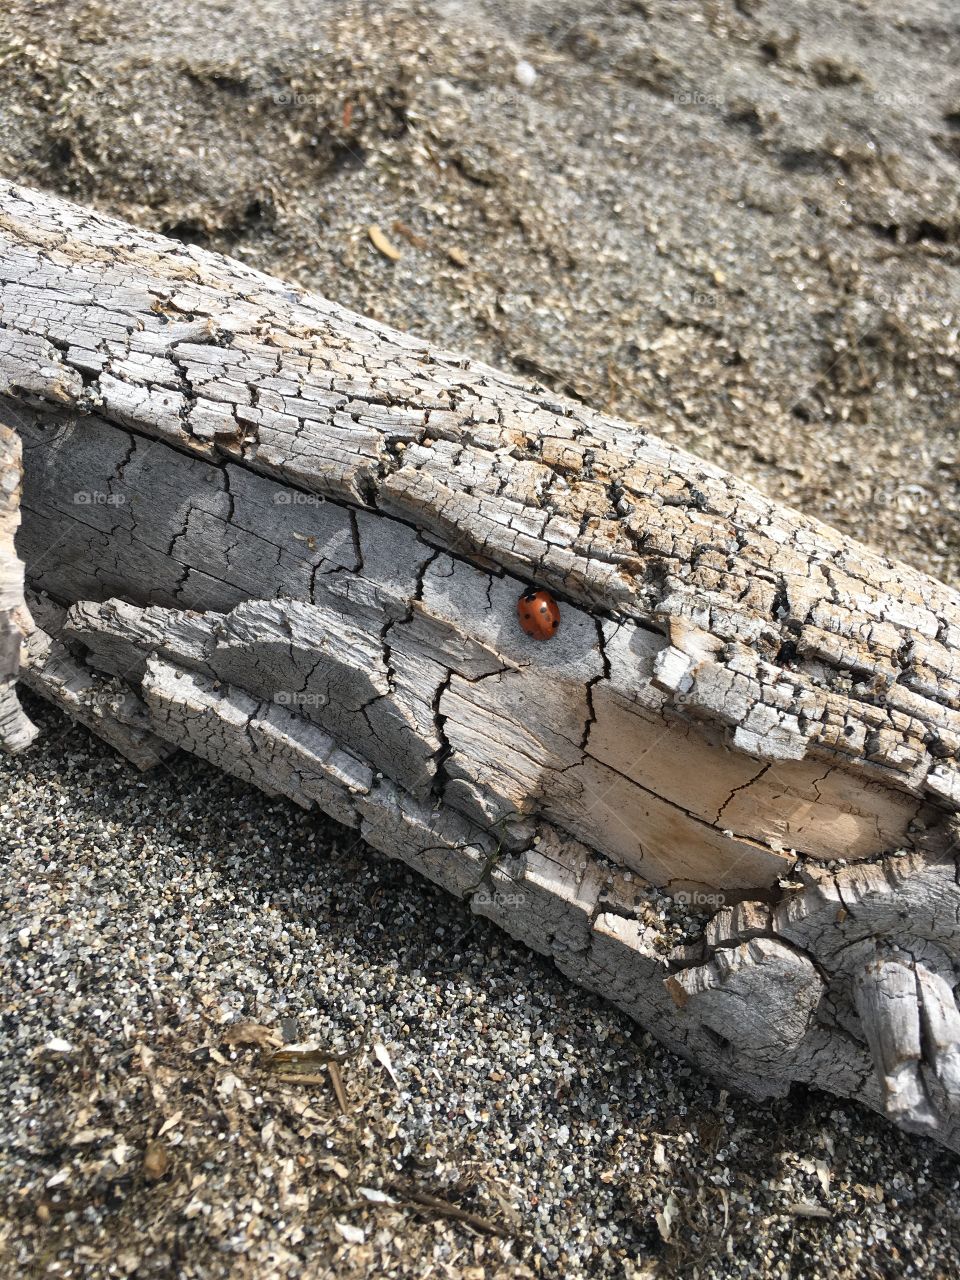 Lady bug on beach wood 